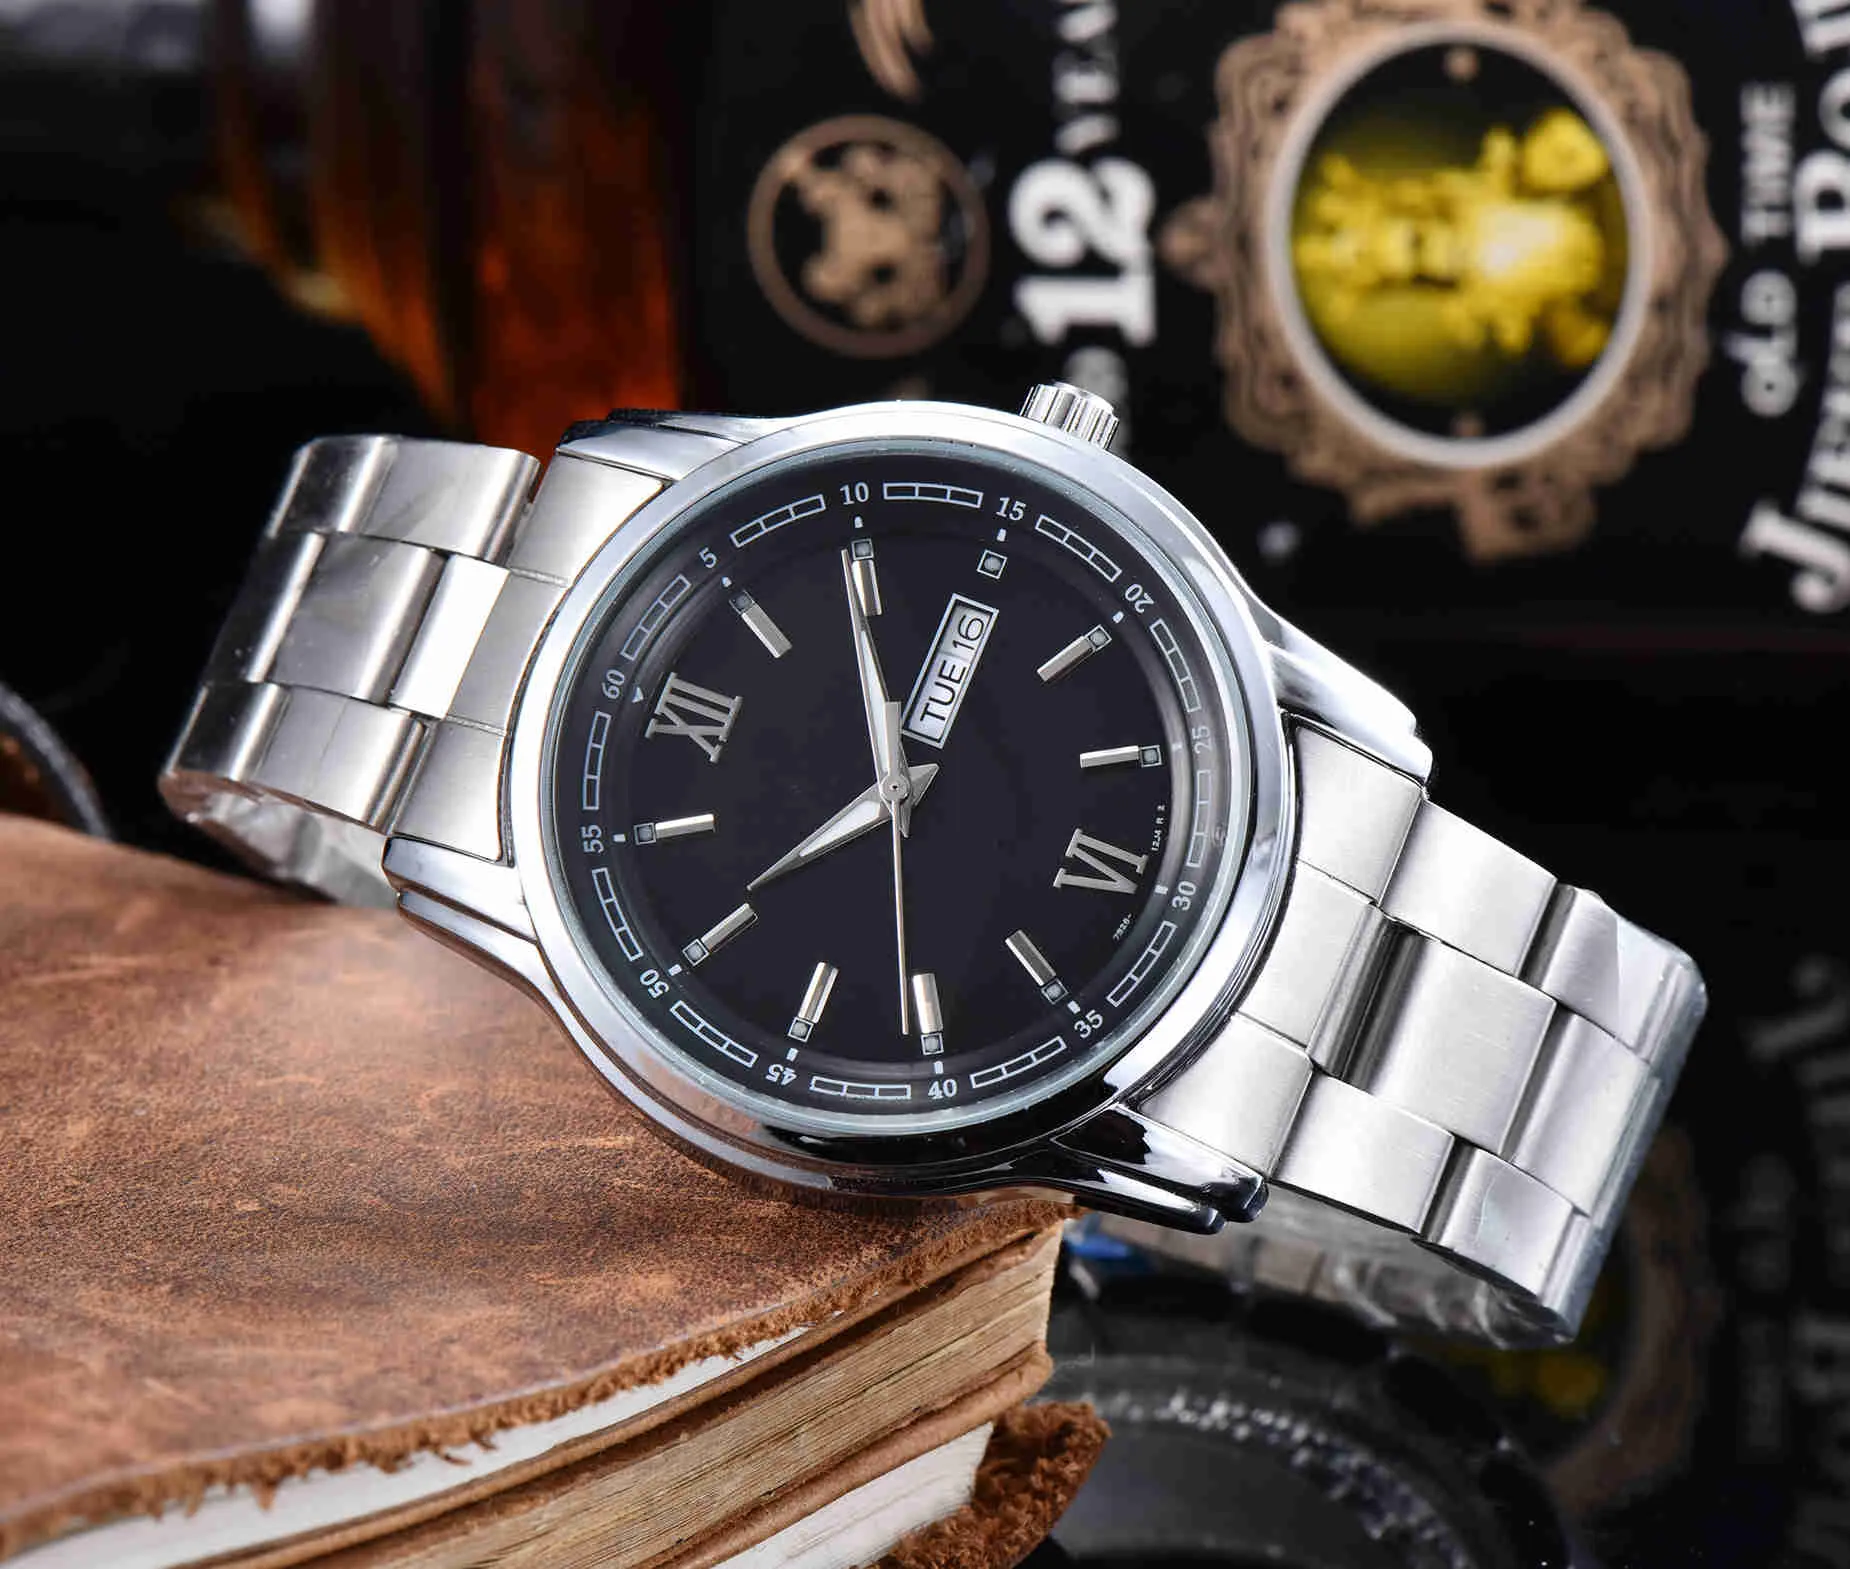 Reloj de moda de lujo de alta calidad con movimiento de cuarzo, semana y calendario, correa de acero, estilo minimalista, reloj para hombre 208w